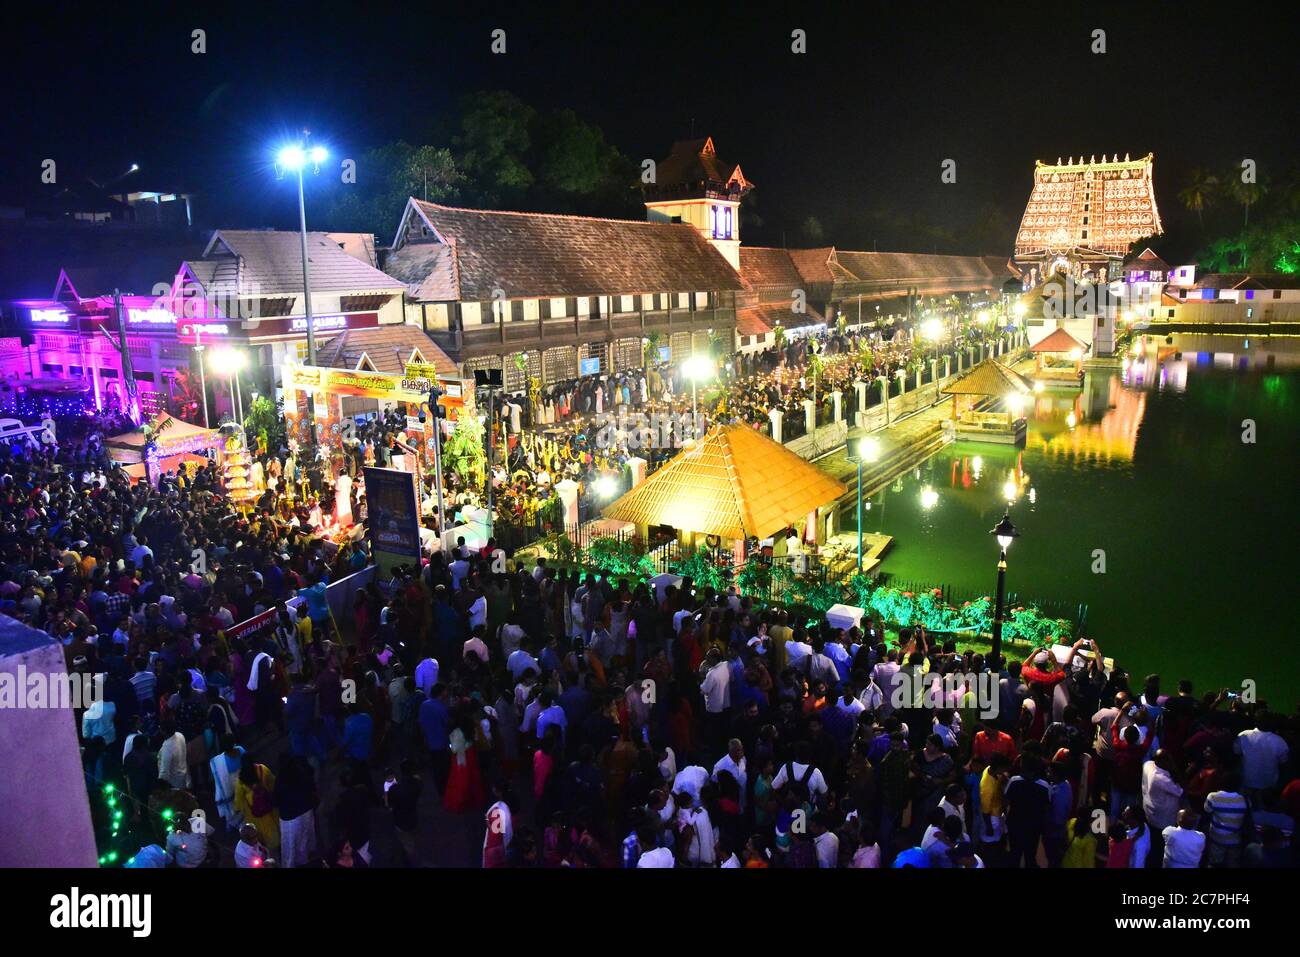 foule au temple de swamy de sree padmanabha pendant la cérémonie de lakshadoepam, trivandrum, kerala, inde Banque D'Images